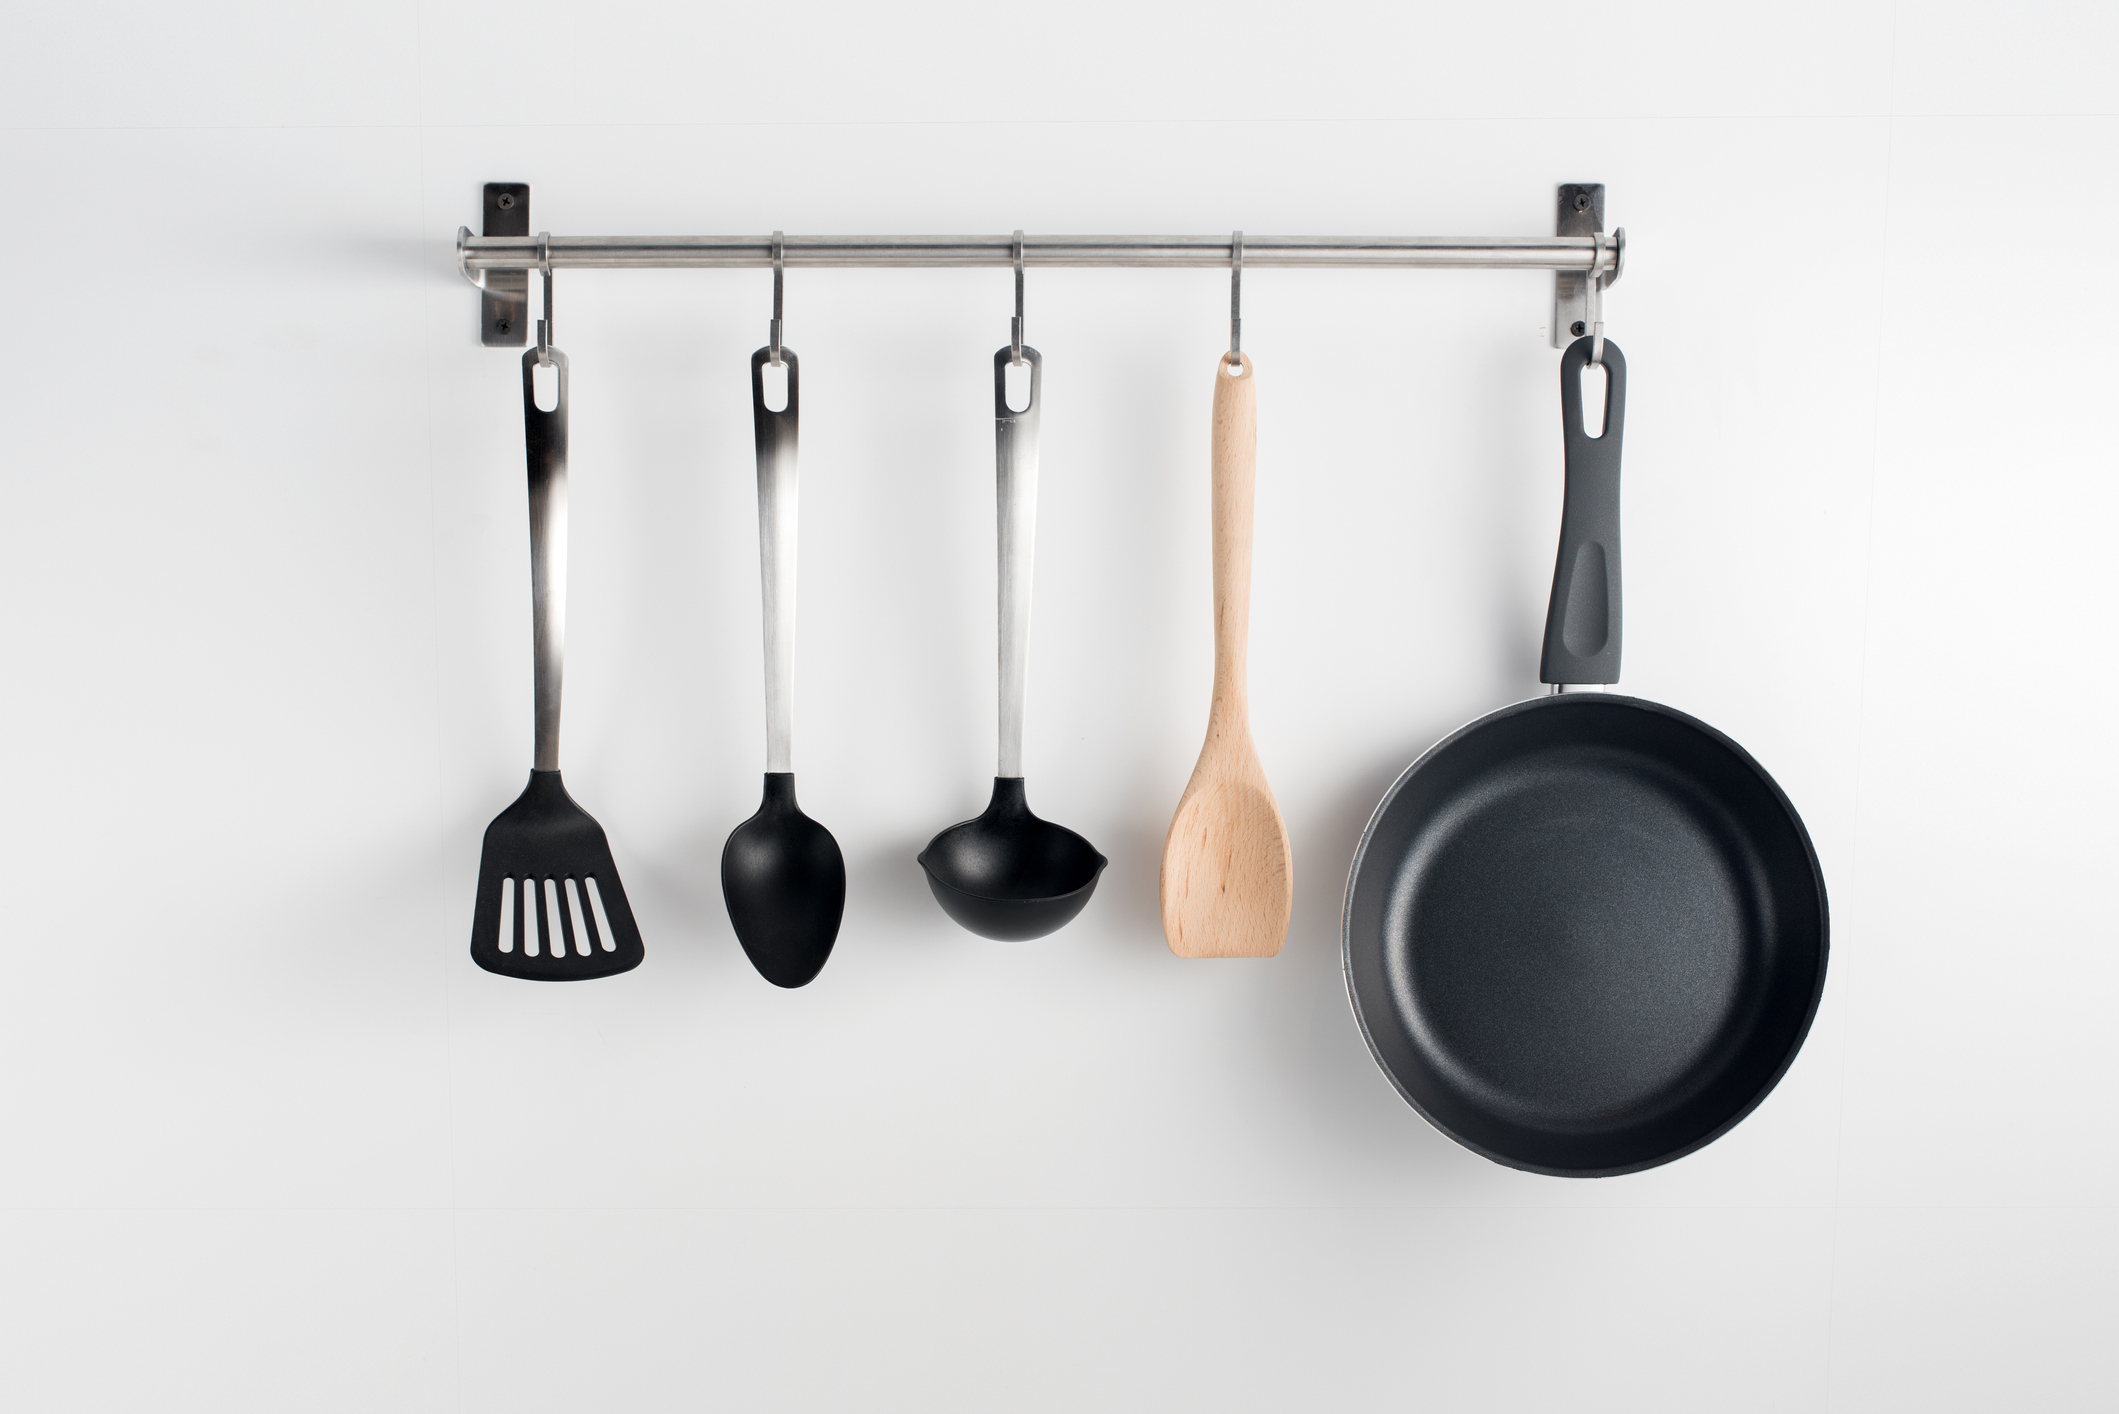 make wall hanger for kitchen utensils